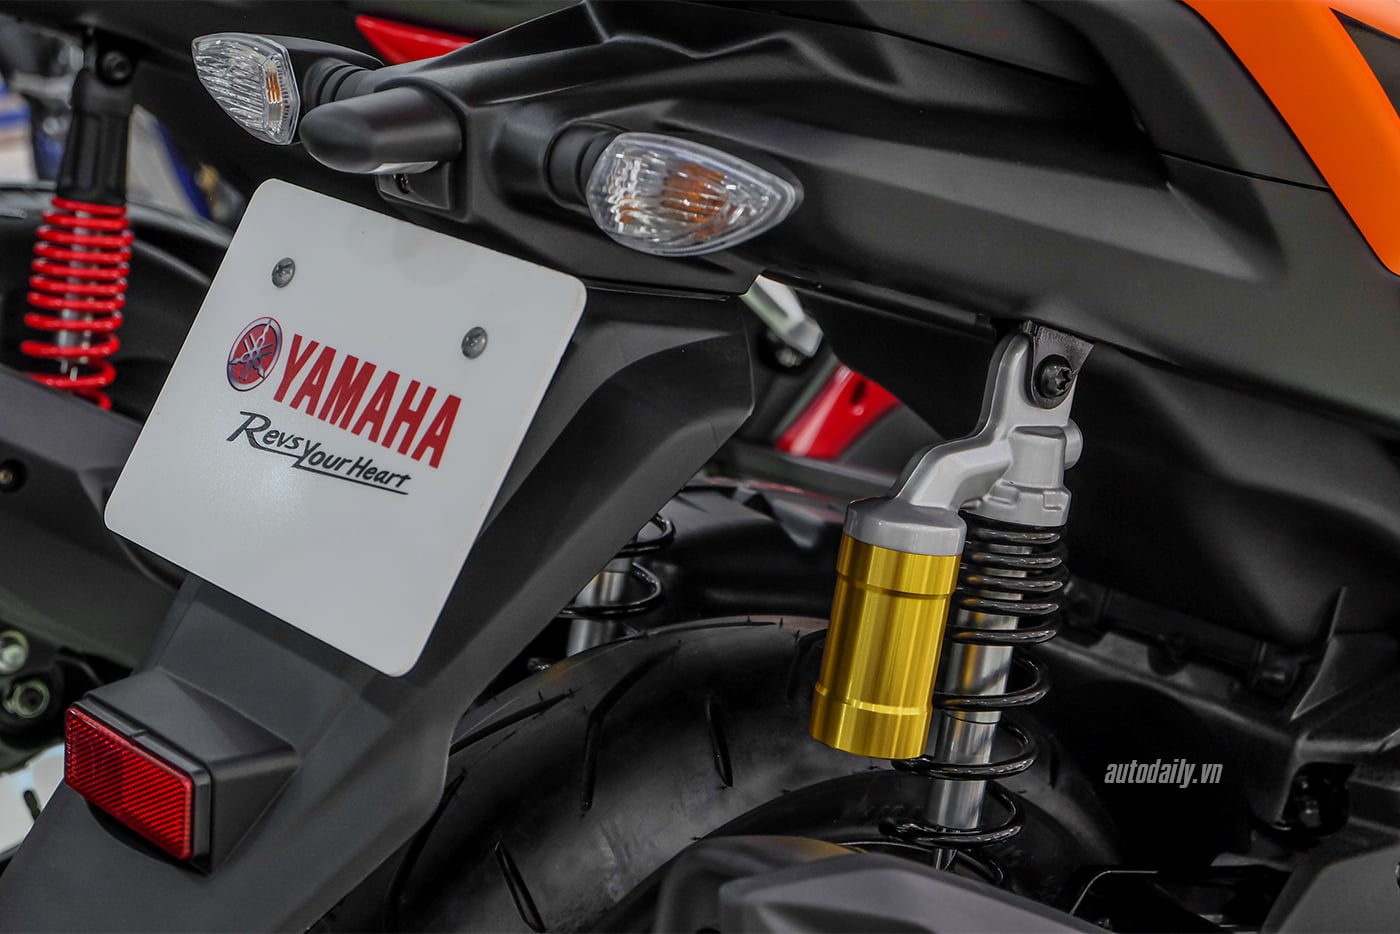 Yamaha NVX 155 ABS thêm màu "Cam sành điệu", giá từ 52,7 triệu đồng 11